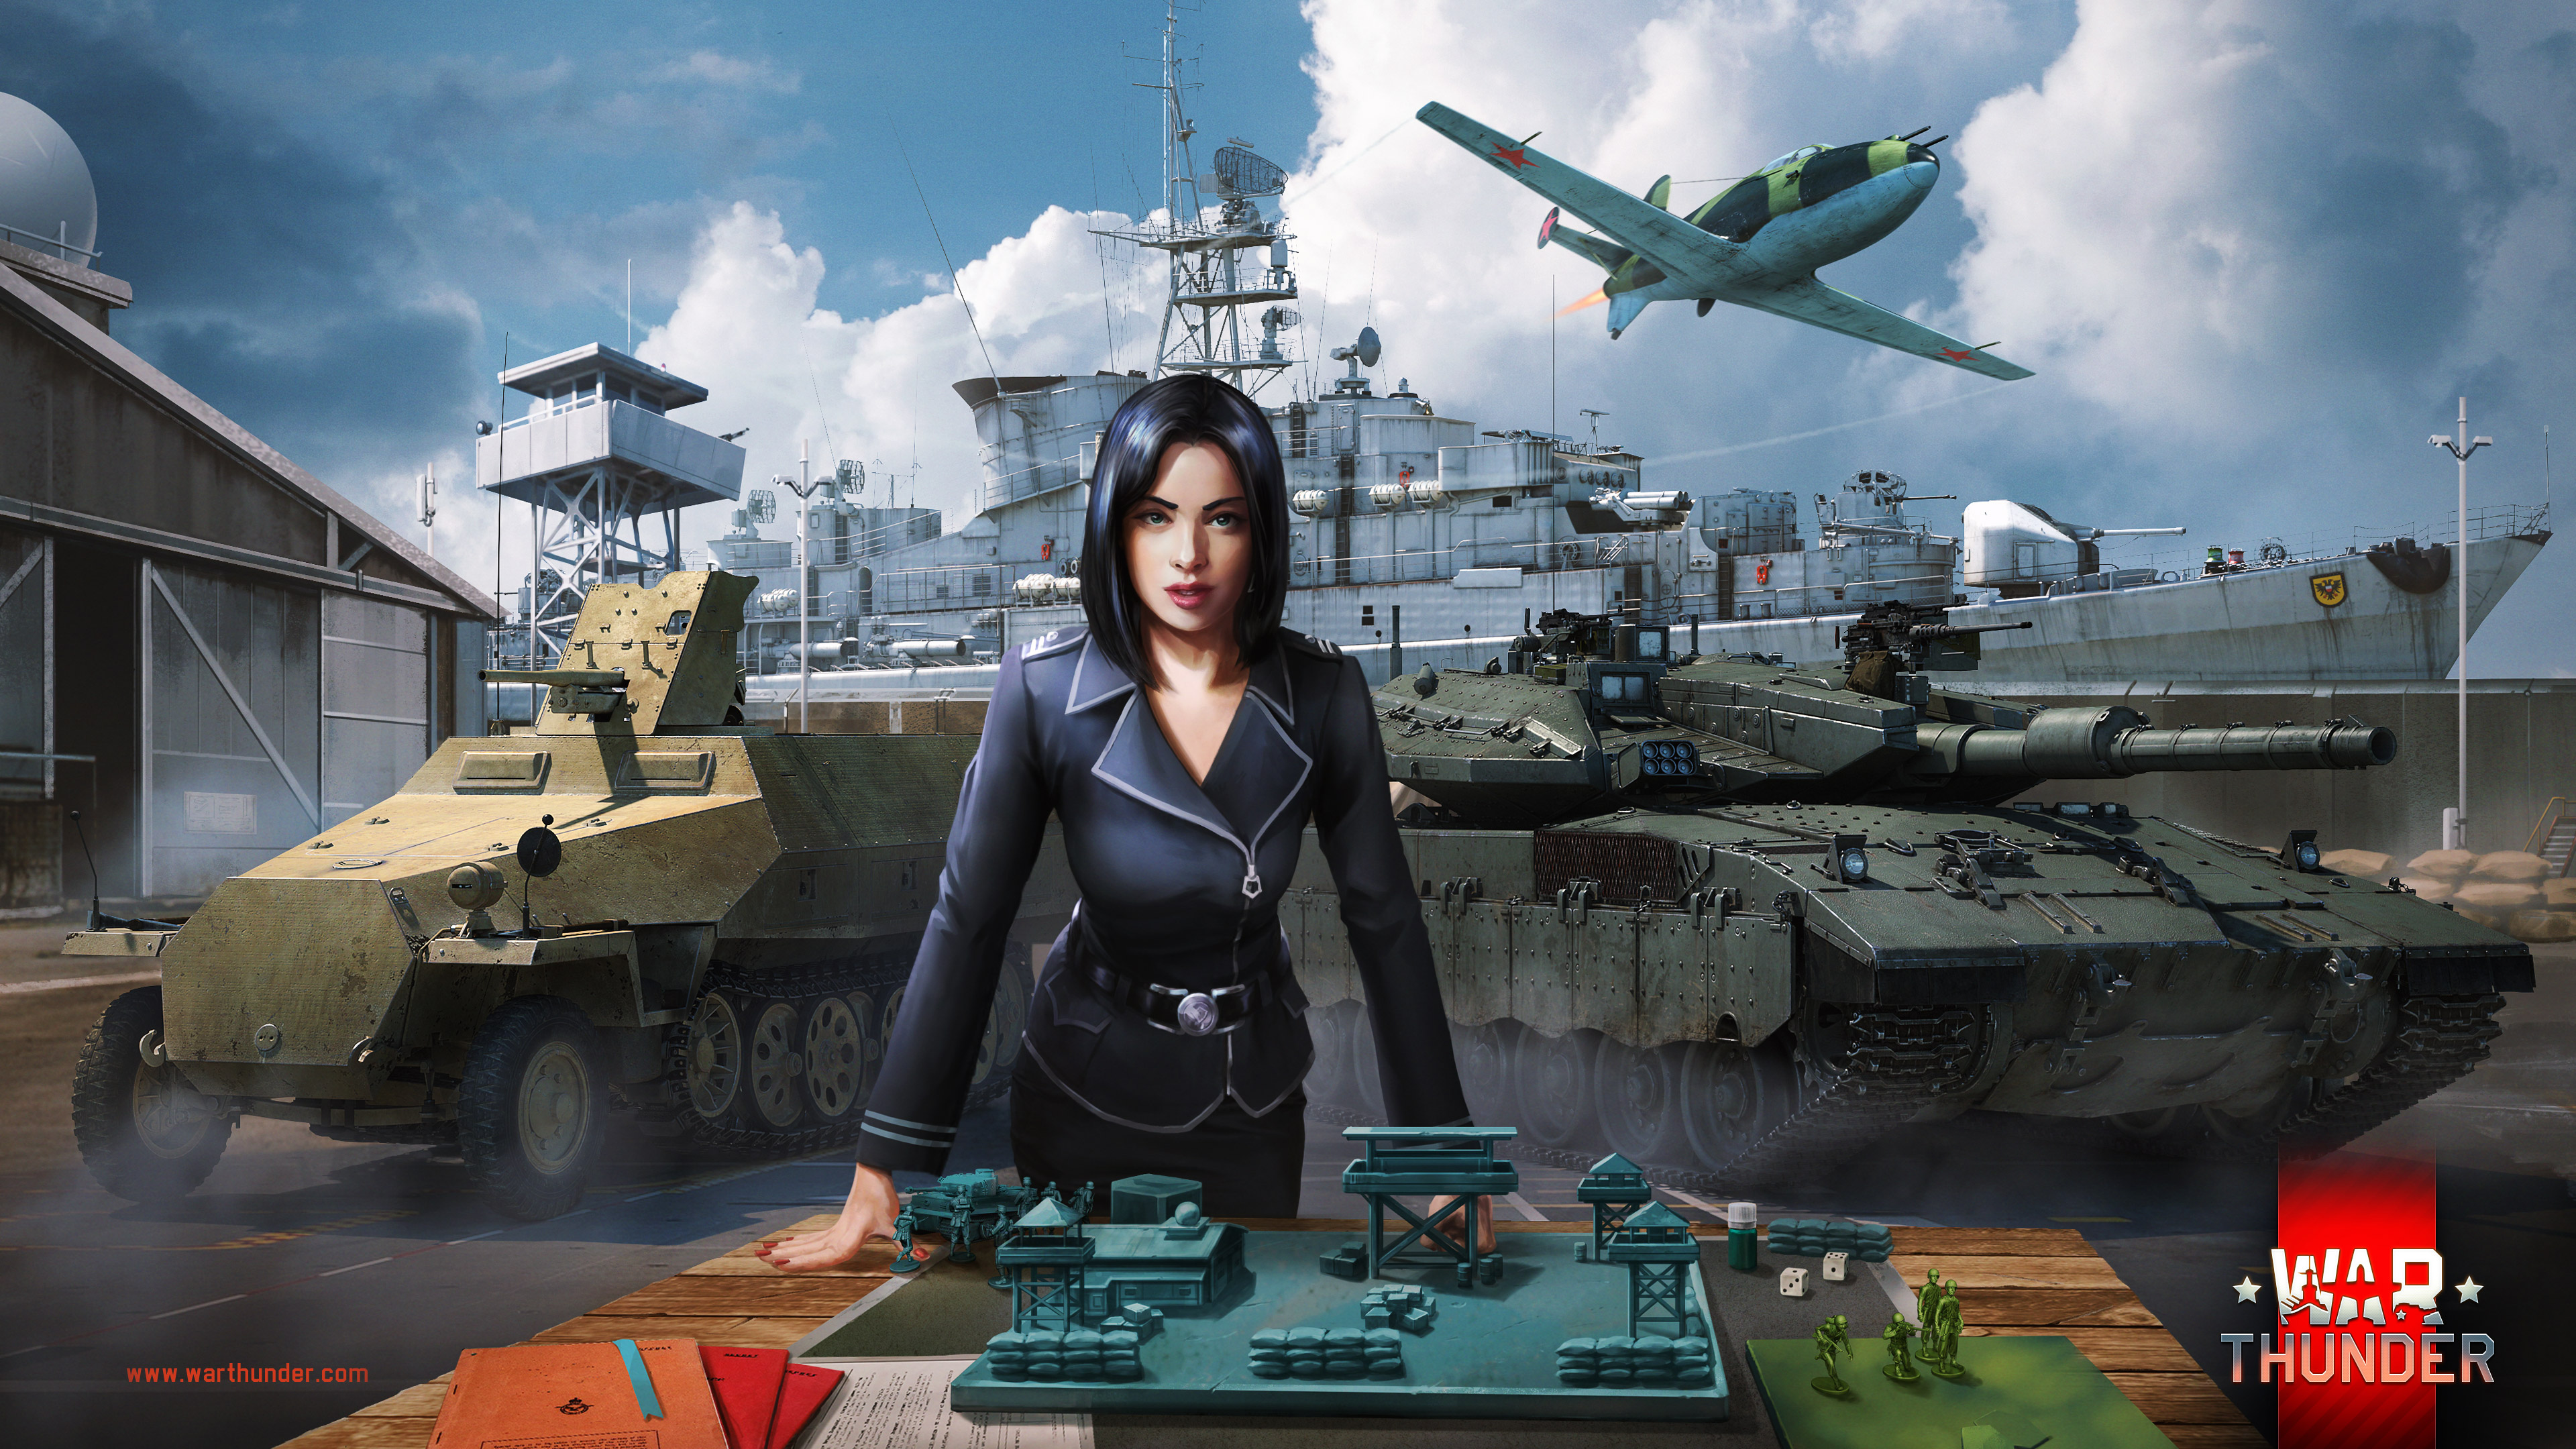 工作イベント 兵棋演習 ストラテジスト Strategist War Thunder ウォーサンダー Dmm Games